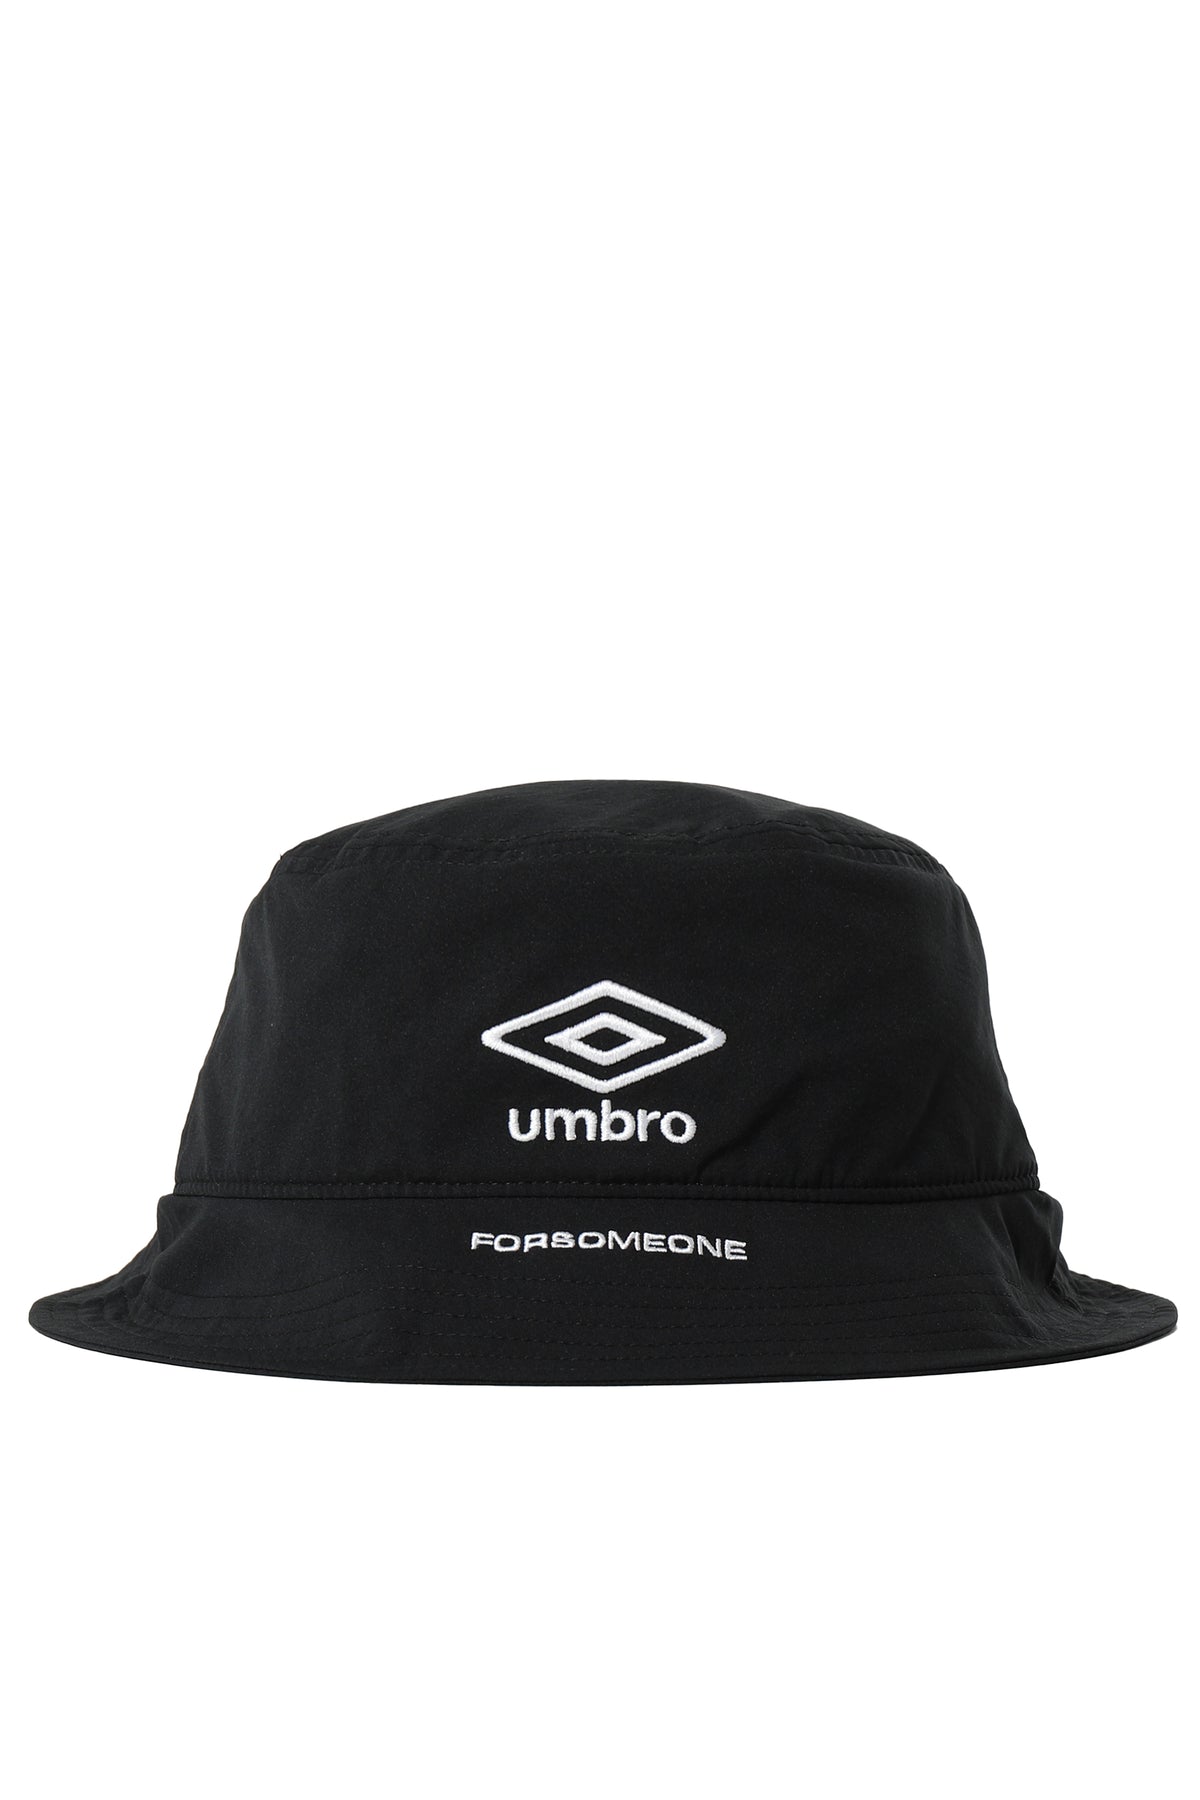 UMBRO BUCKET HAT / BLK